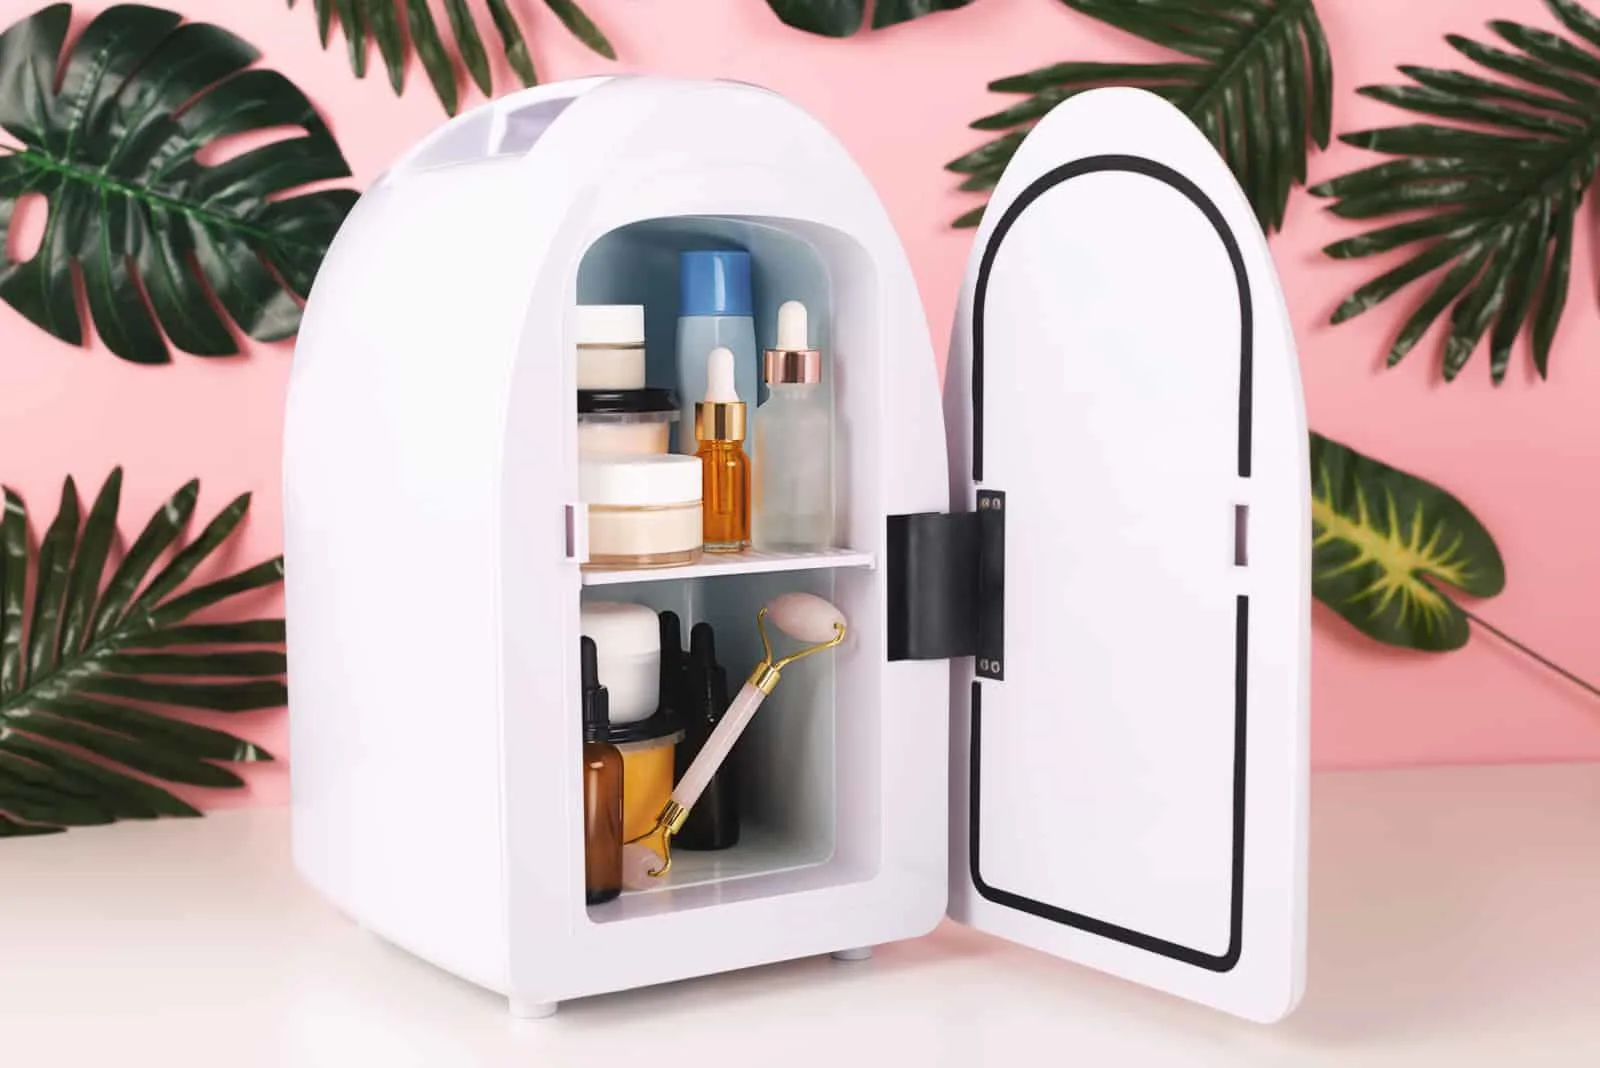 Mini fridge for keeping skincare